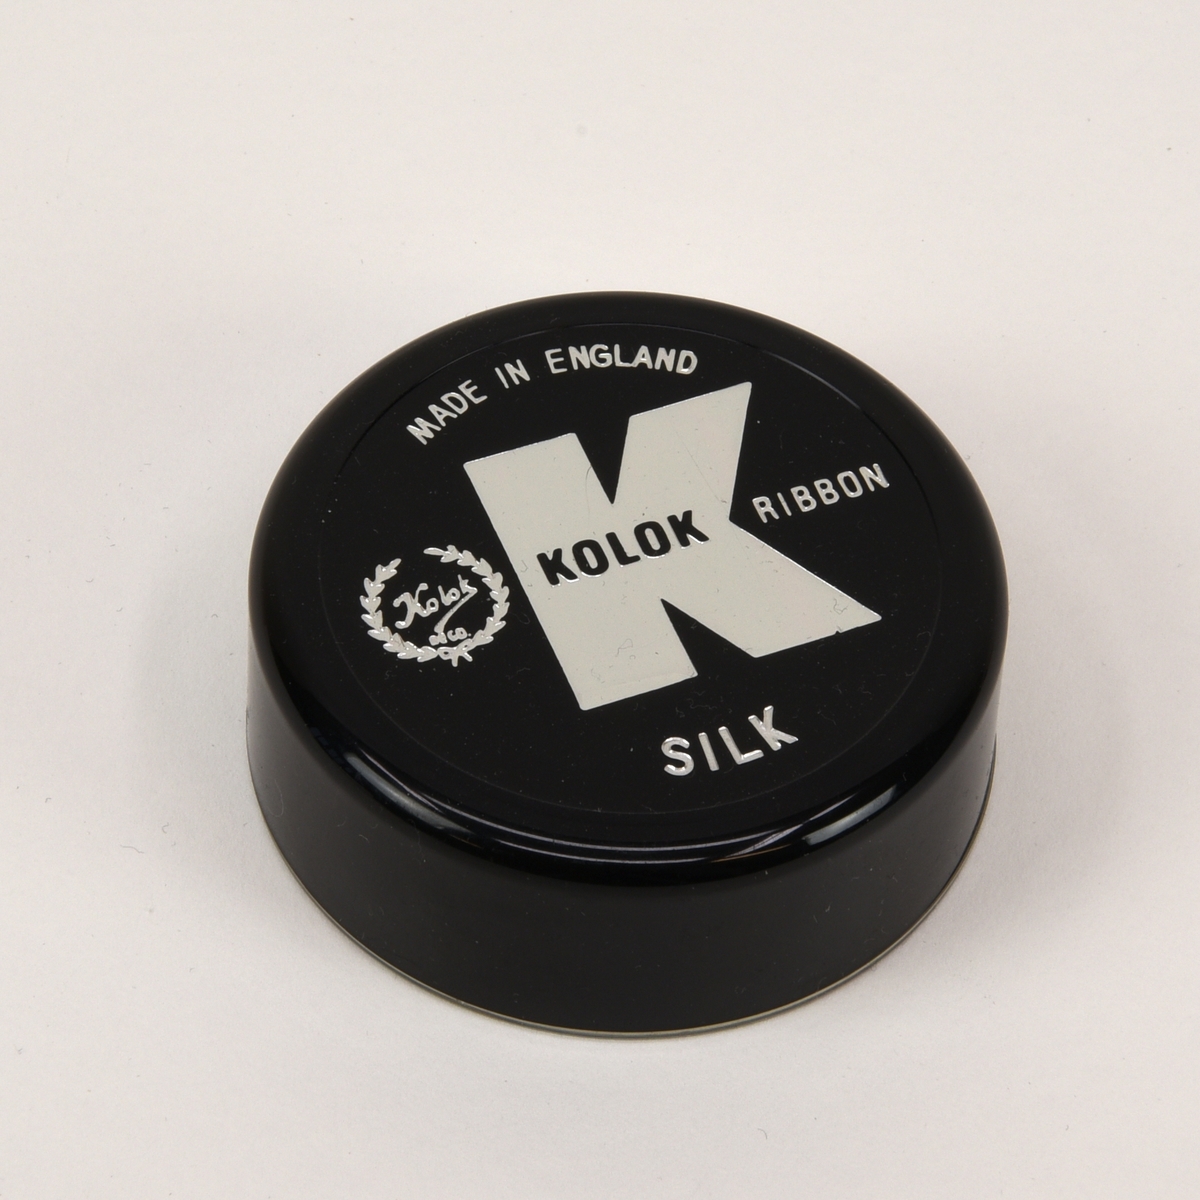 Två svarta 13 mm färgband till skrivmaskin på spolar av DIN 2103-standard. Båda band ligger i varsin plastask med lock.

Det ena färgbandet (:18) är använt och upprullat på en spole från Pelikan men ligger i en rund ask från Kolok (:19-20). Asken har en genomskinlig underdel och ett svart lock. På locket finns Koloks logotyp, "Made in england" och "Silk" tryckt i silver. I botten av asken finns ett guldfärgat papper med information om vilka skrivmaskinstyper bandet passar till.

Det andra bandet (:21) är oanvänt men saknar helt information om tillverkare och dylikt. Det enda som finns är "DIN 2103" instansat på spolen och ett eventuellt artikelnummer på askens undersida. Spolen är förpackad i folie och asken (:22-23) är av samma typ som (:19) men locket är rött och saknar text.